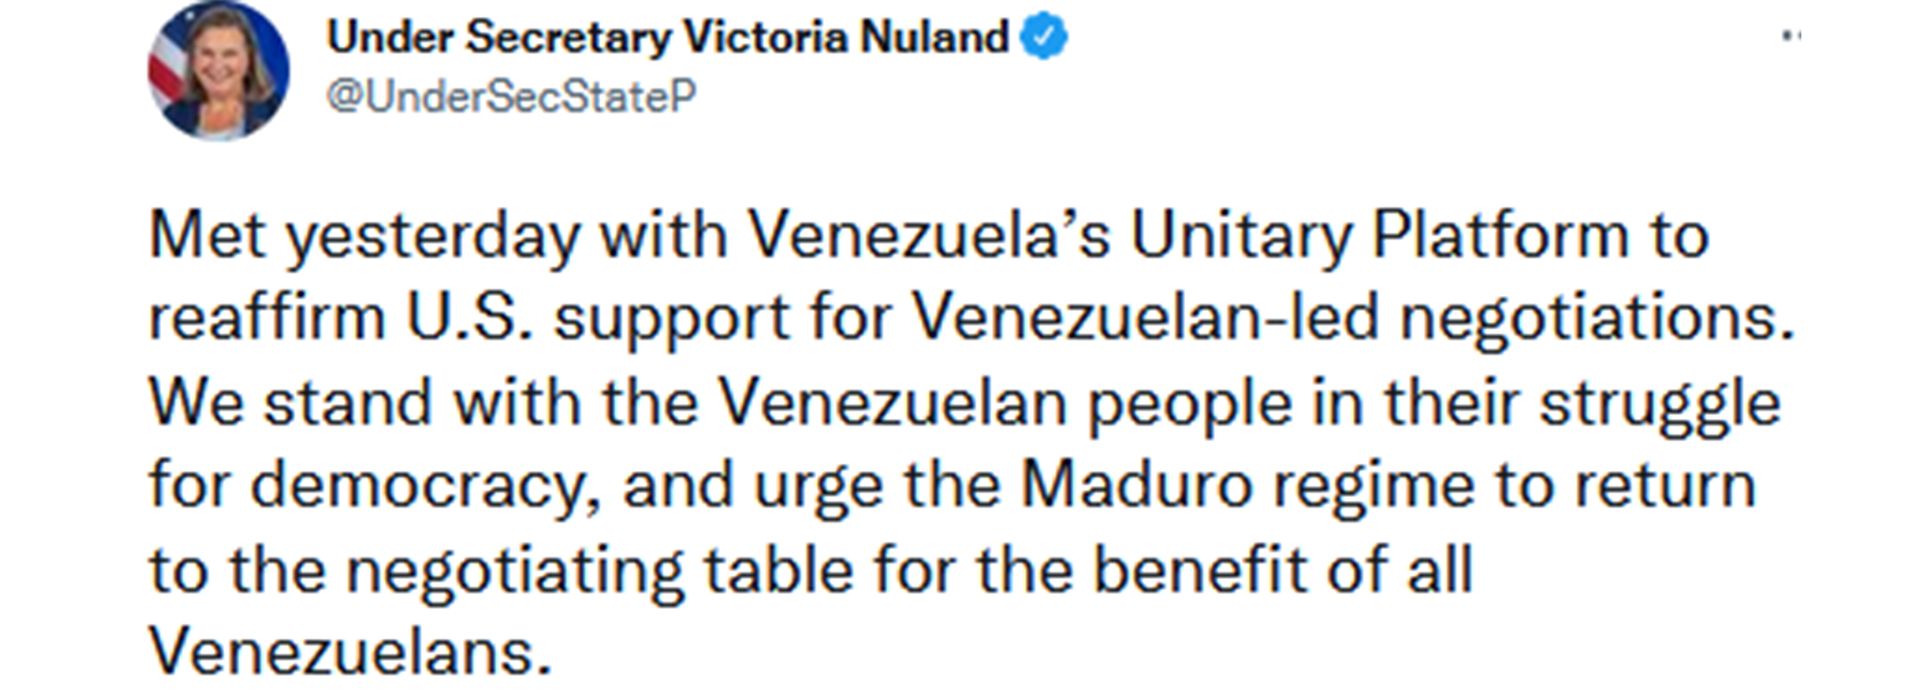 El mensaje de Victoria Nuland en Twitter